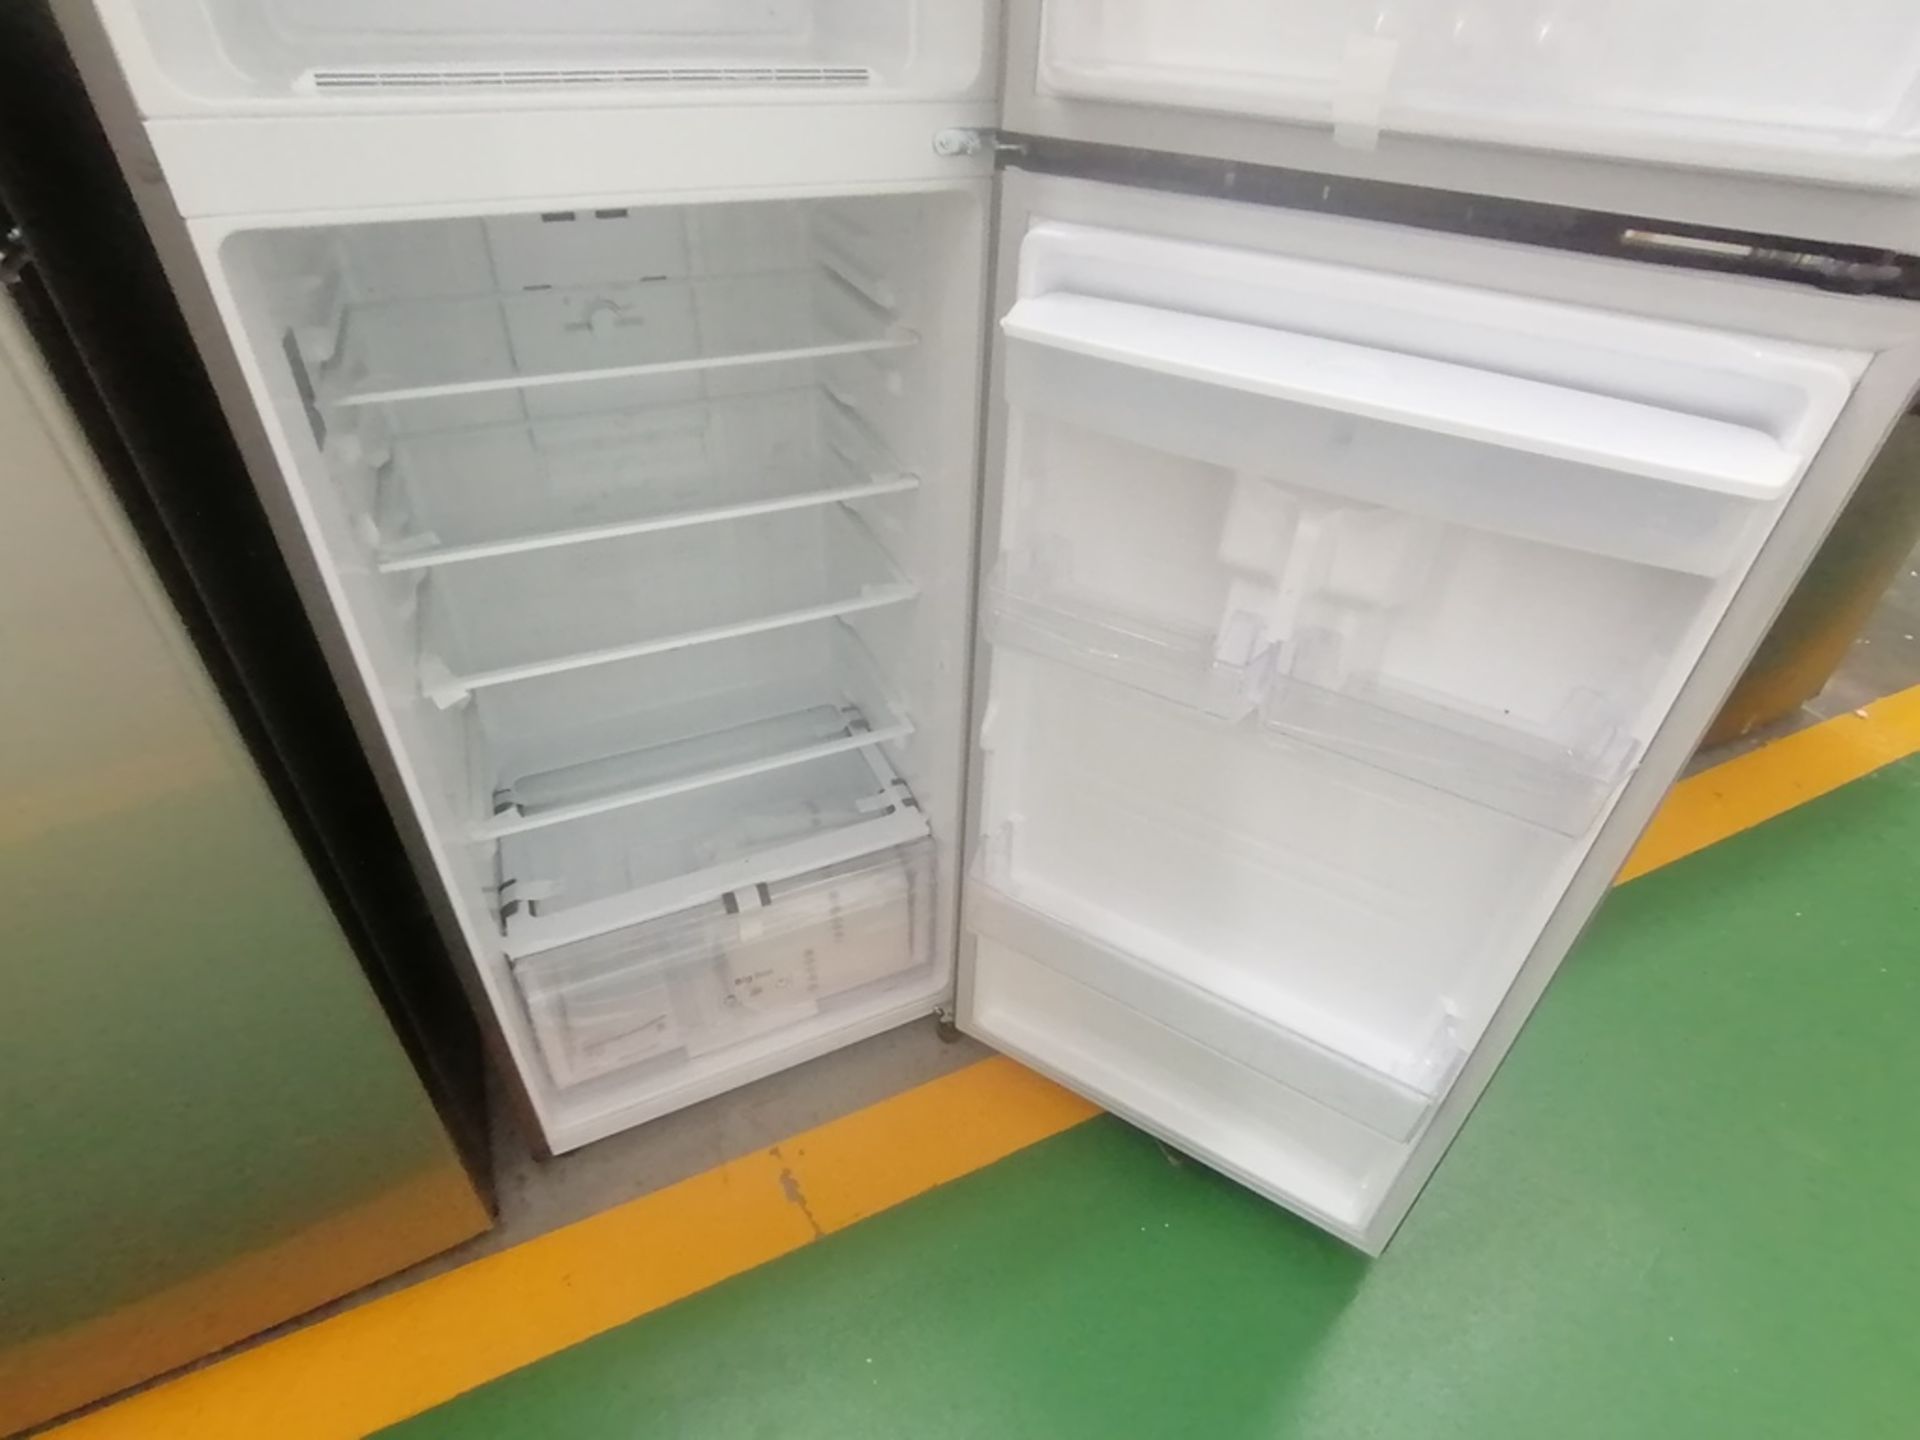 Lote de 2 refrigeradores incluye: 1 Refrigerador con dispensador de agua, Marca Mabe, Modelo RME360 - Image 14 of 15